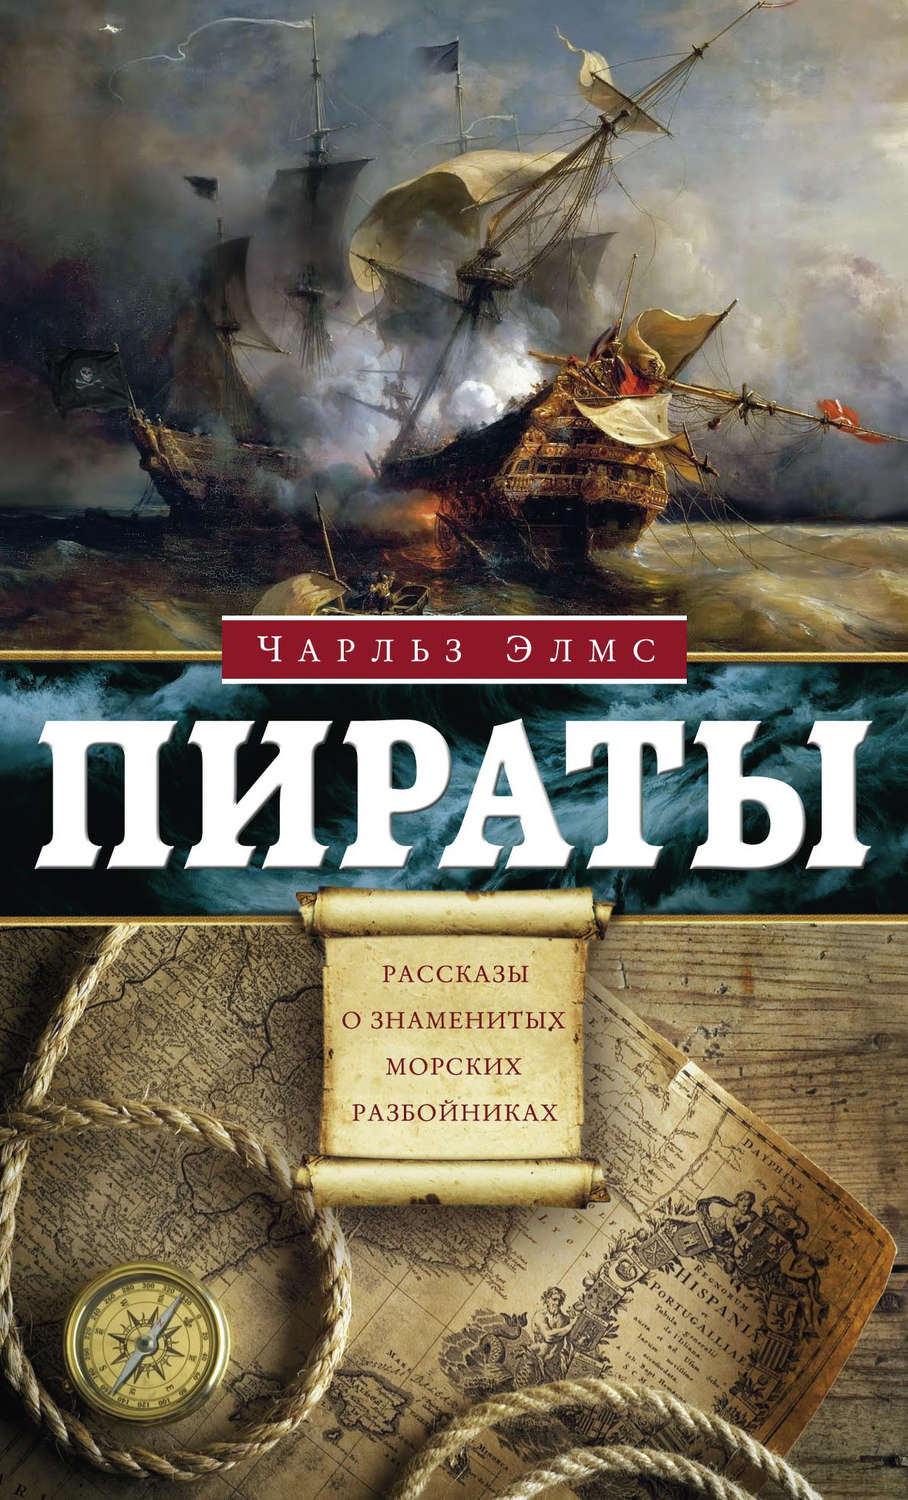 Скачать бесплатно книги о пиратах